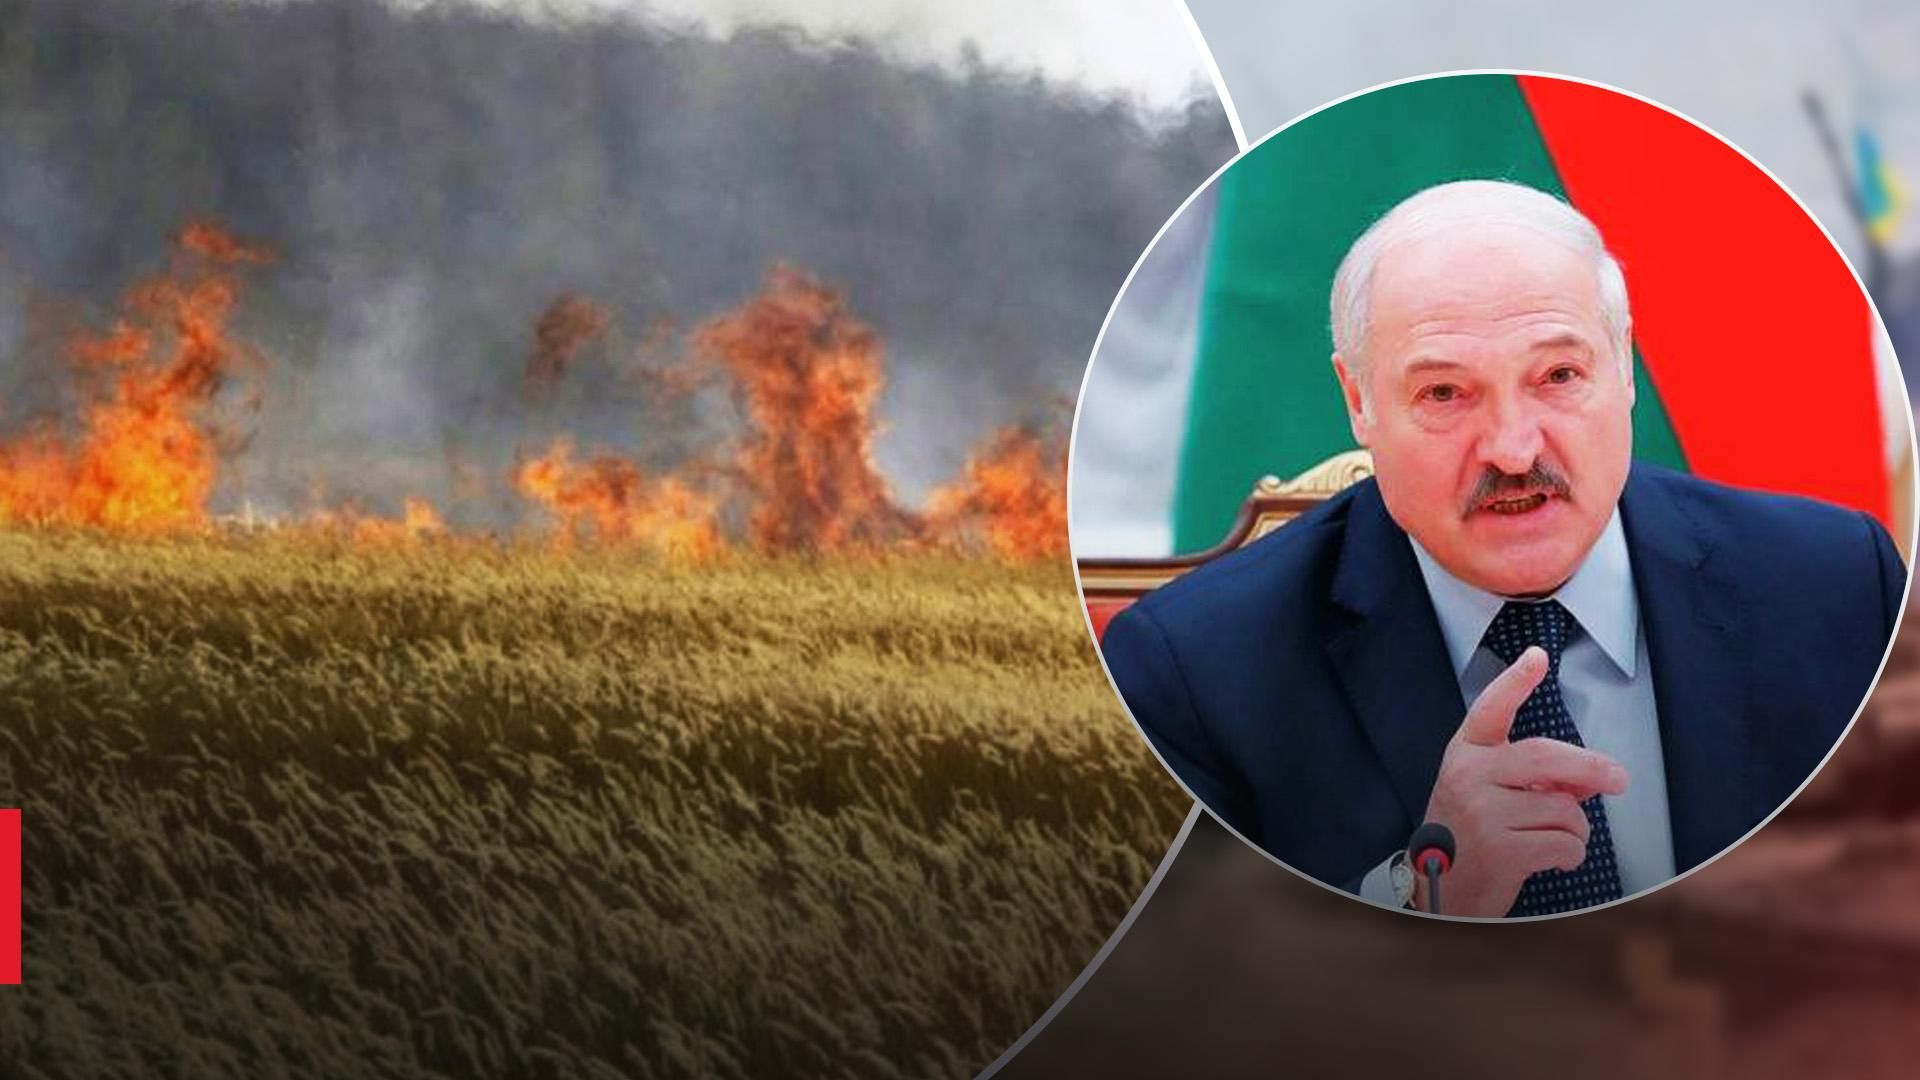 Лукашенко лжет, что Украина сама курит свои поля